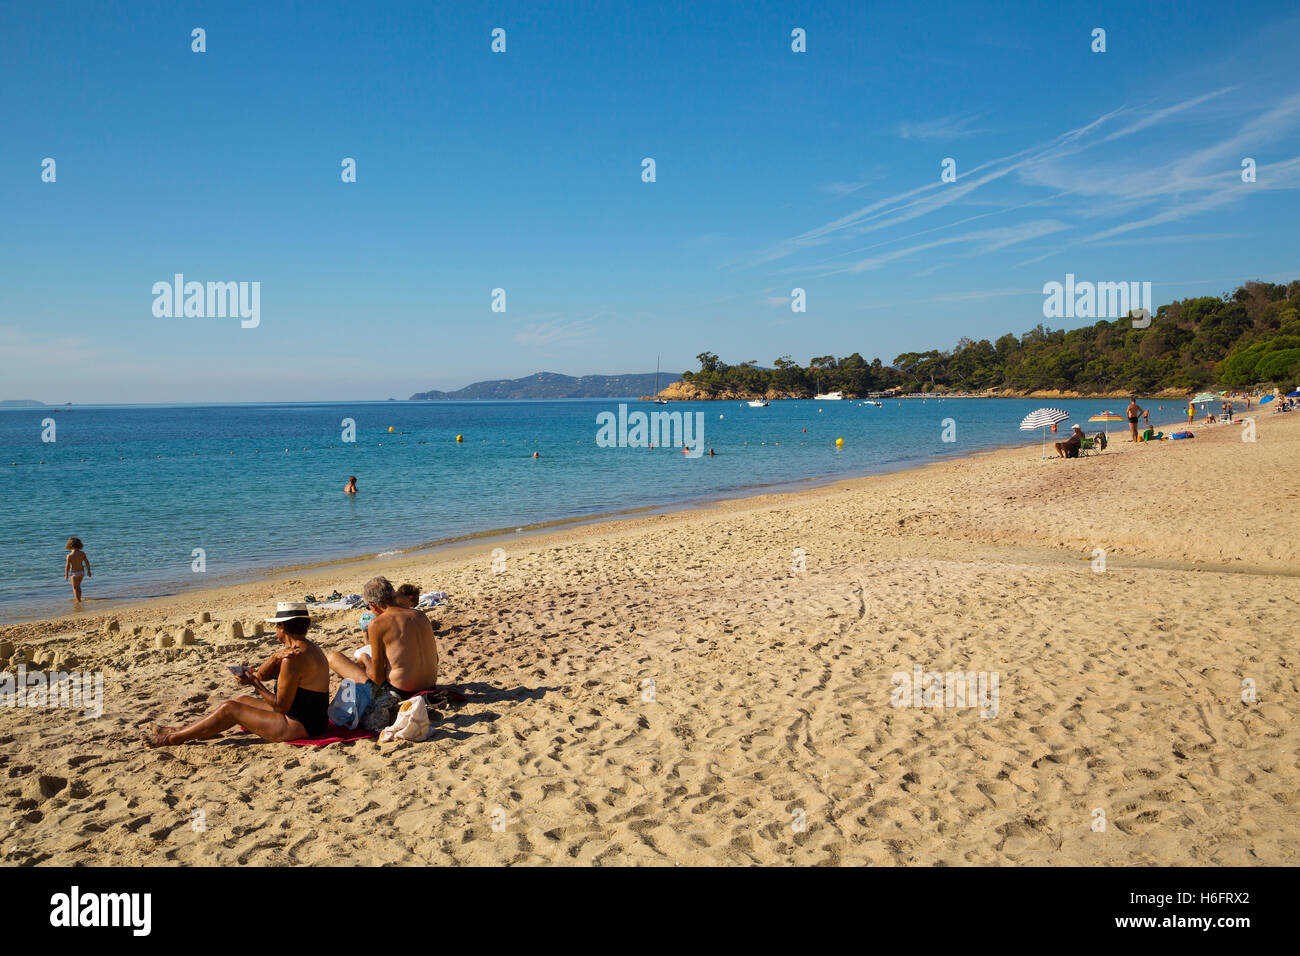 Beach, Corniche des Maures. Le Lavandou. Var department, Provence Alpes Cote d'Azur. French Riviera. Mediterranean Sea. France. Stock Photo